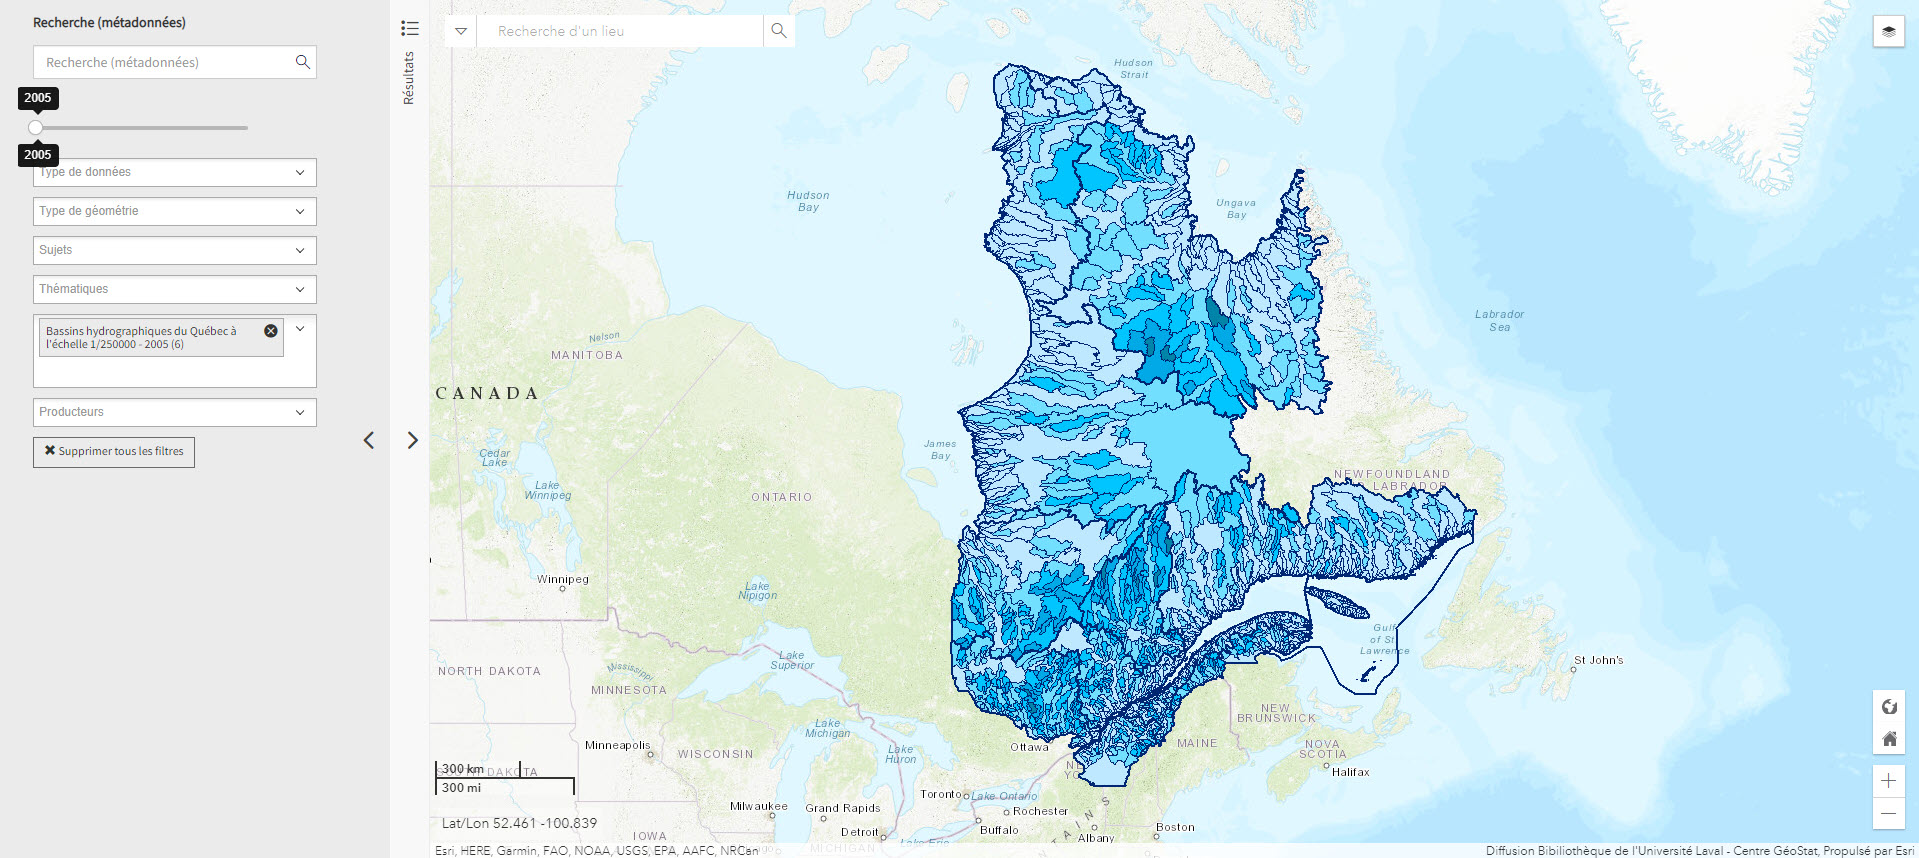 Bassins hydrographiques du Québec à l'échelle 1/250000